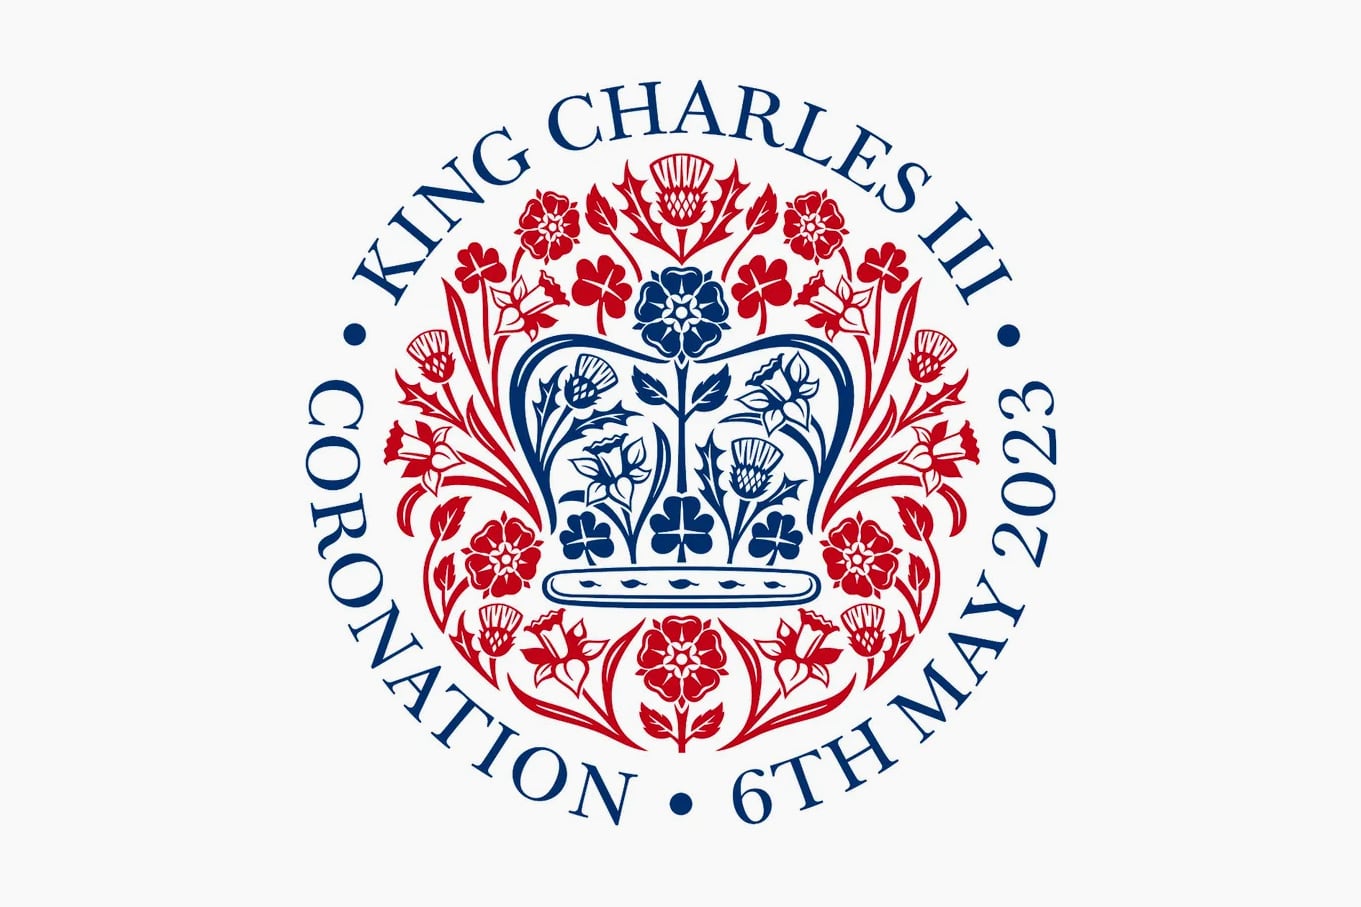 Джони Айв создал логотип для коронации короля Великобритании Карла III